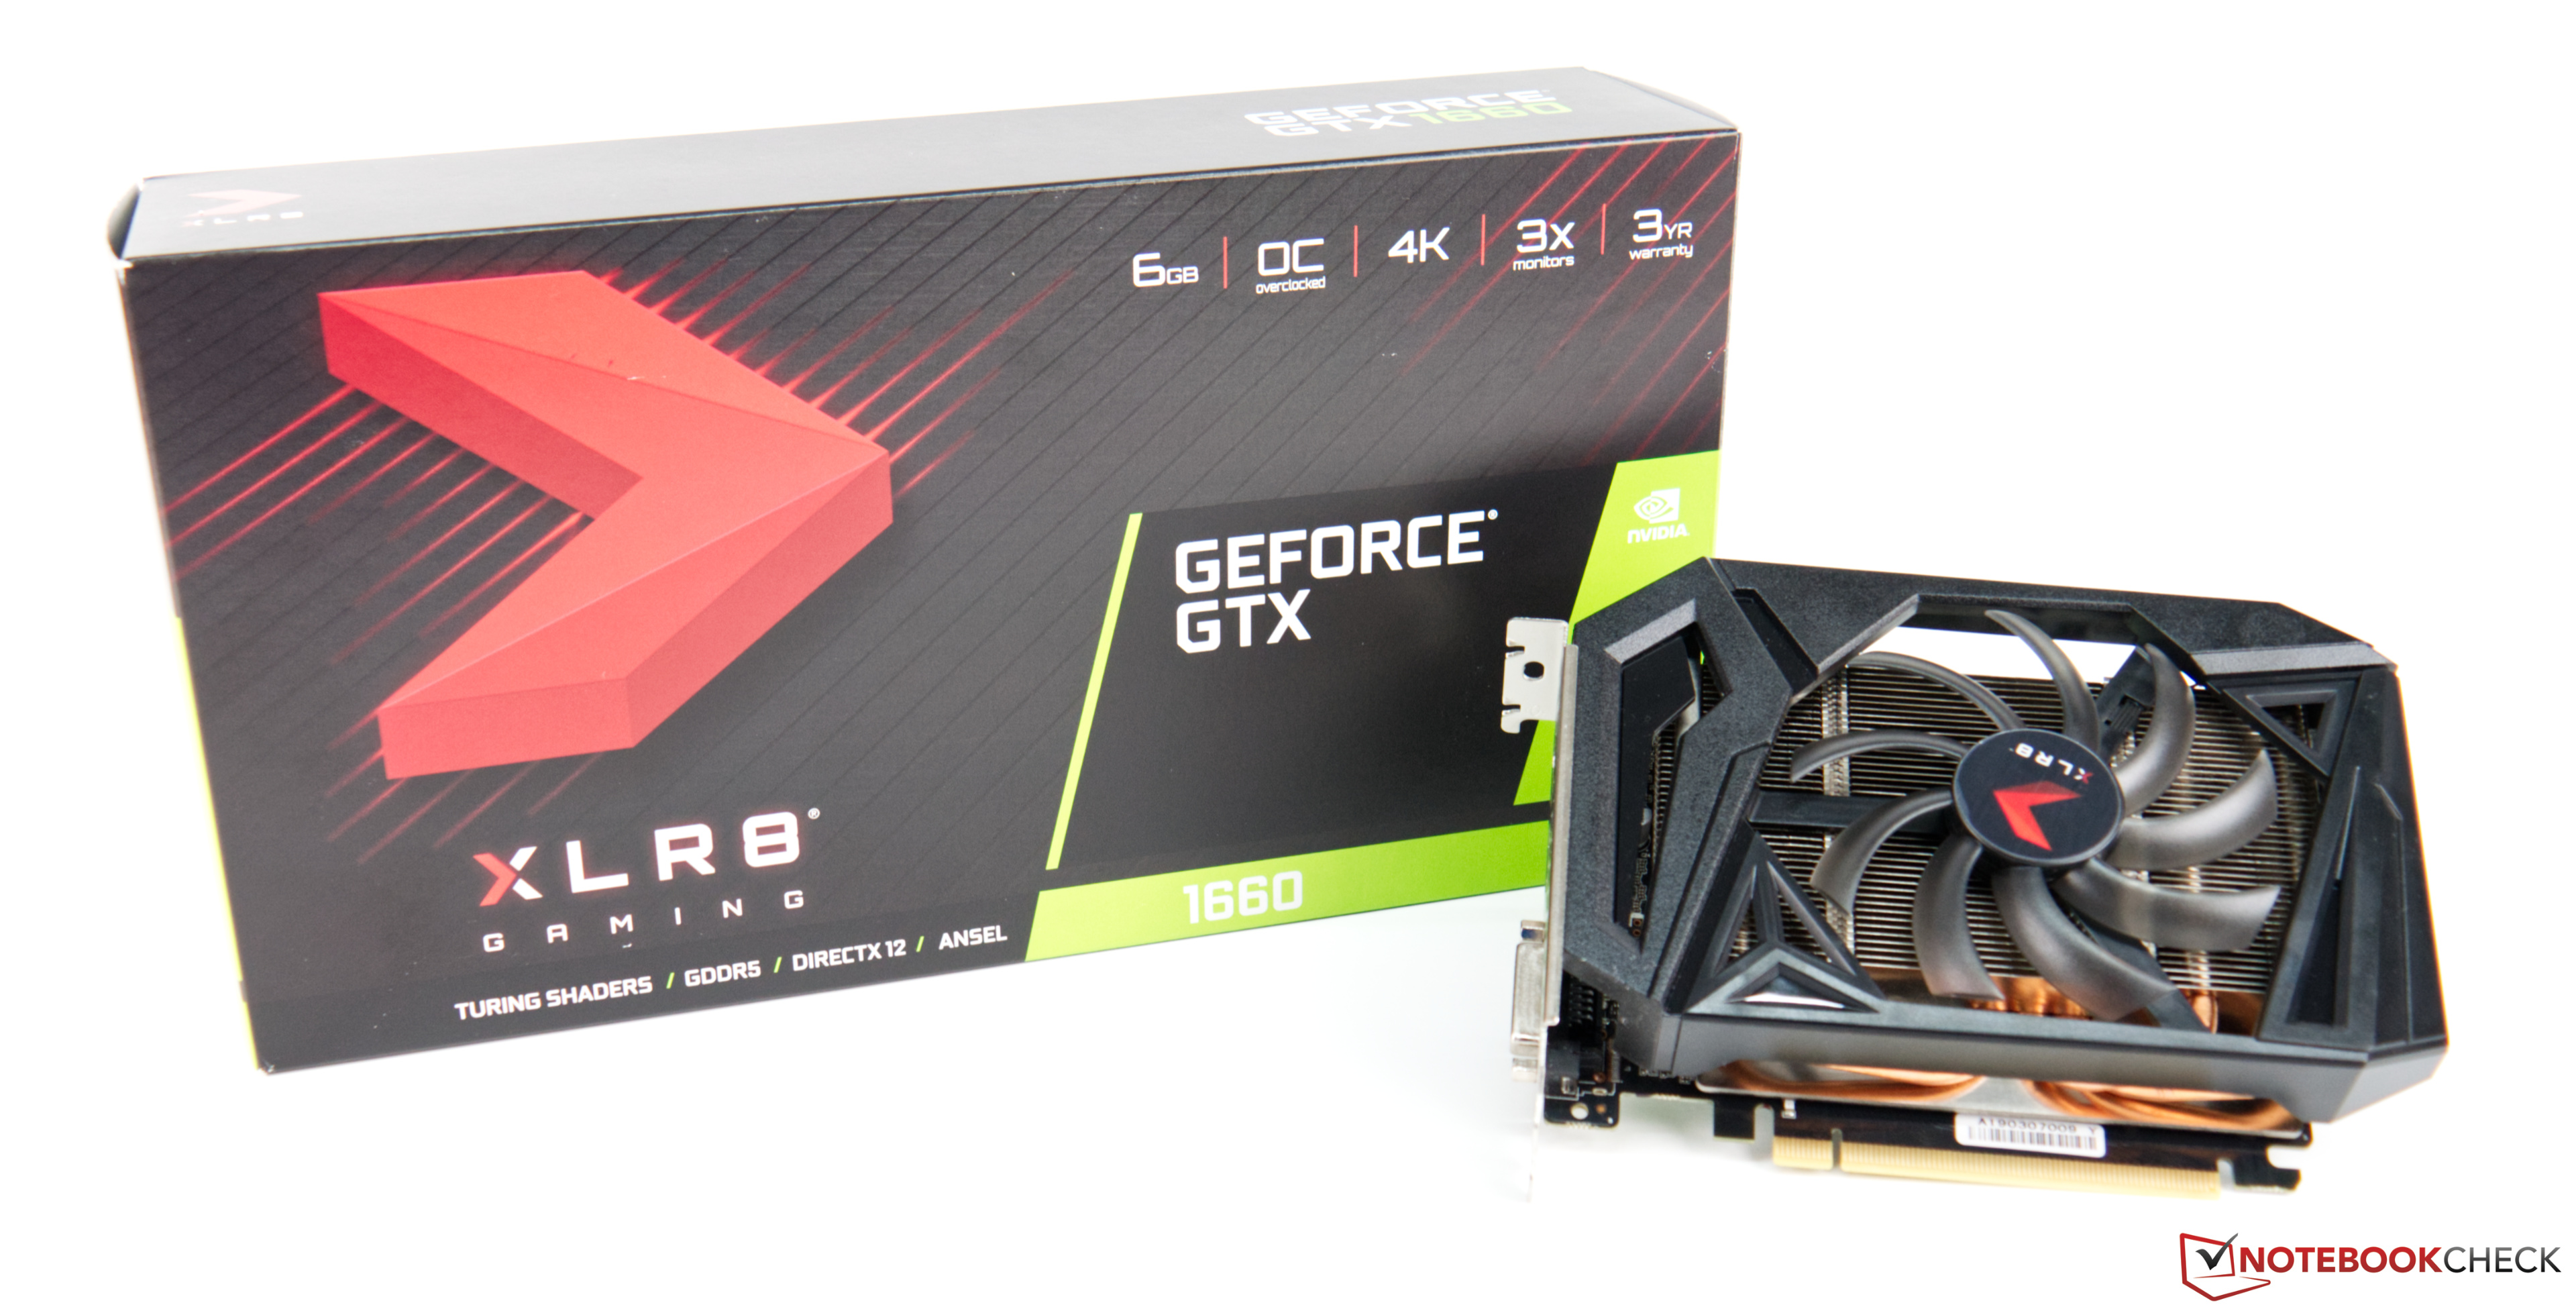 PNY GeForce GTX 1660 XLR8 Gaming OC: A 